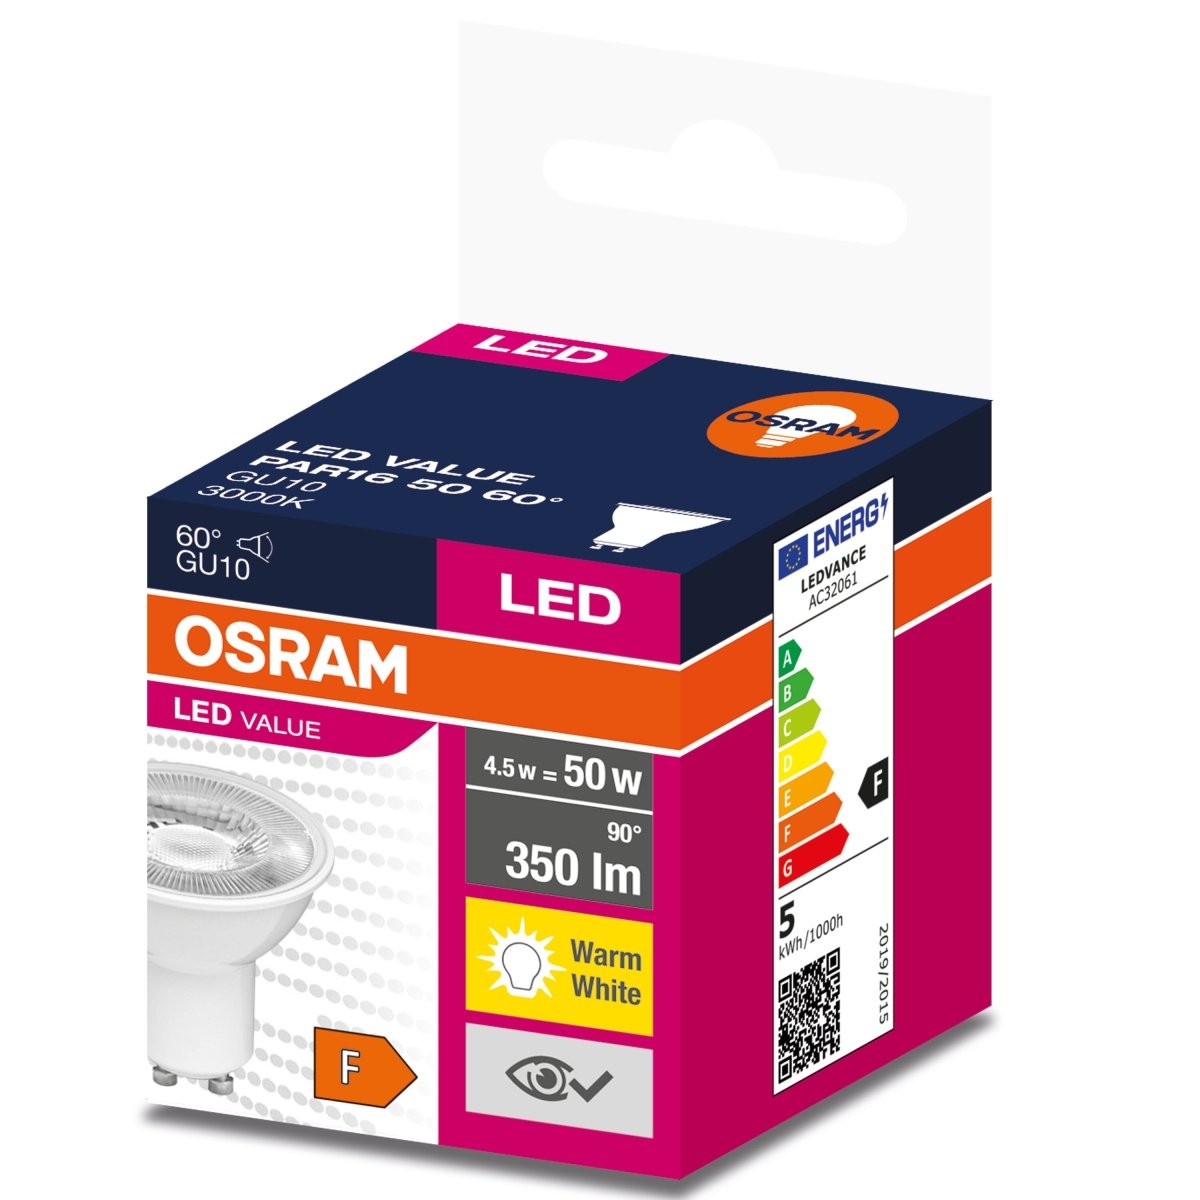 Żarówka LED GU10 4,5W LED VALUE OSRAM, odpowiednik 50W, 60 st., barwa ciepła, 1 szt. - eshop LEDVANCE 4058075599024